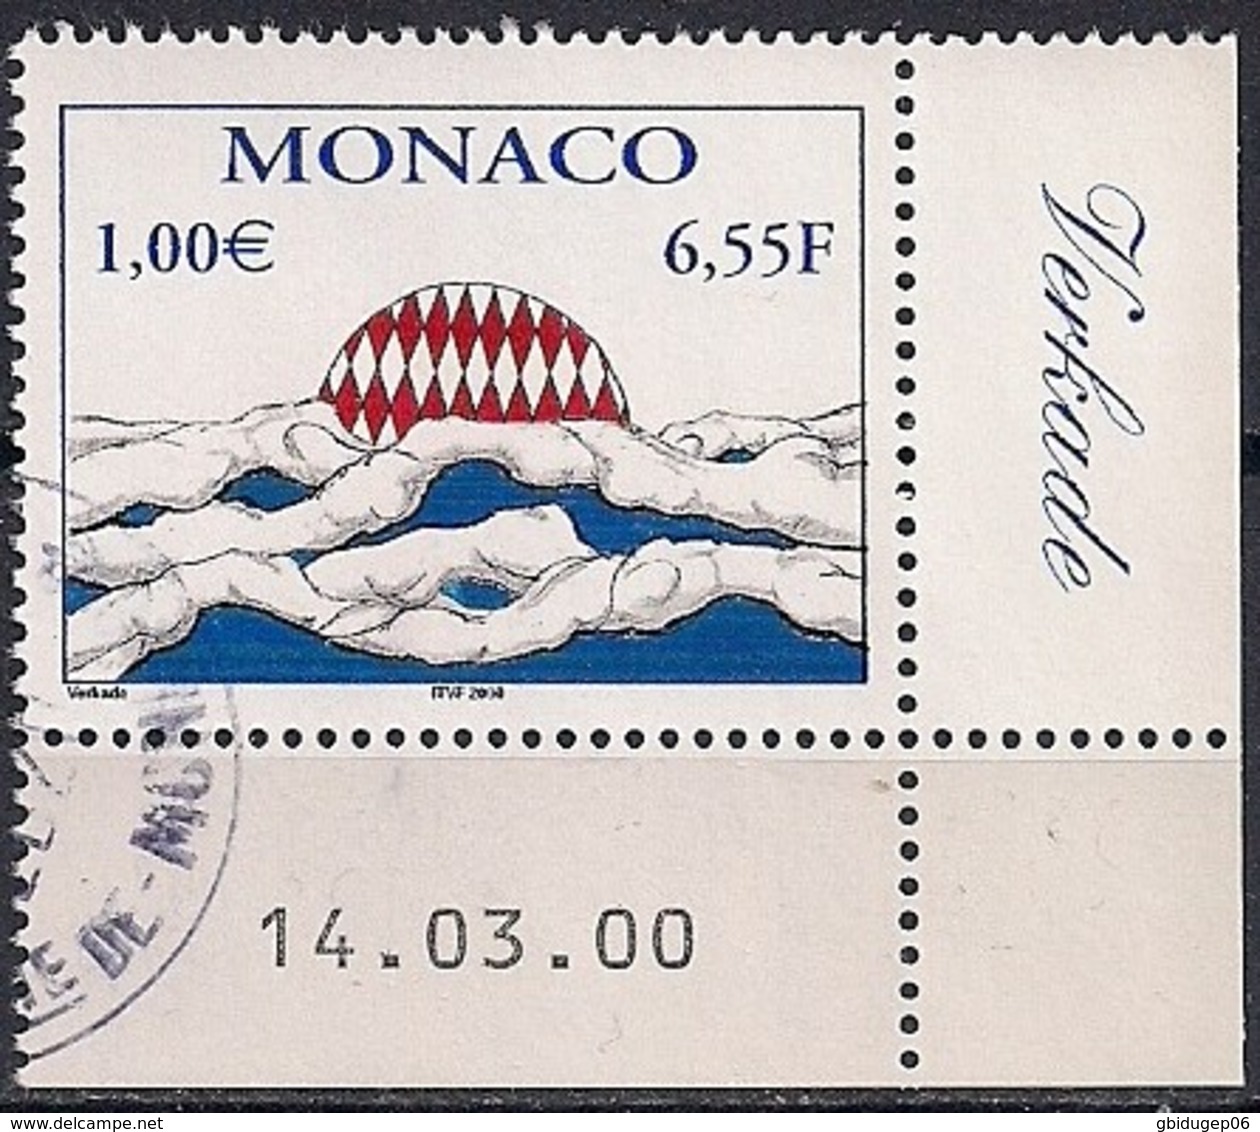 YT N° 2247 - Oblitéré - Art - Used Stamps